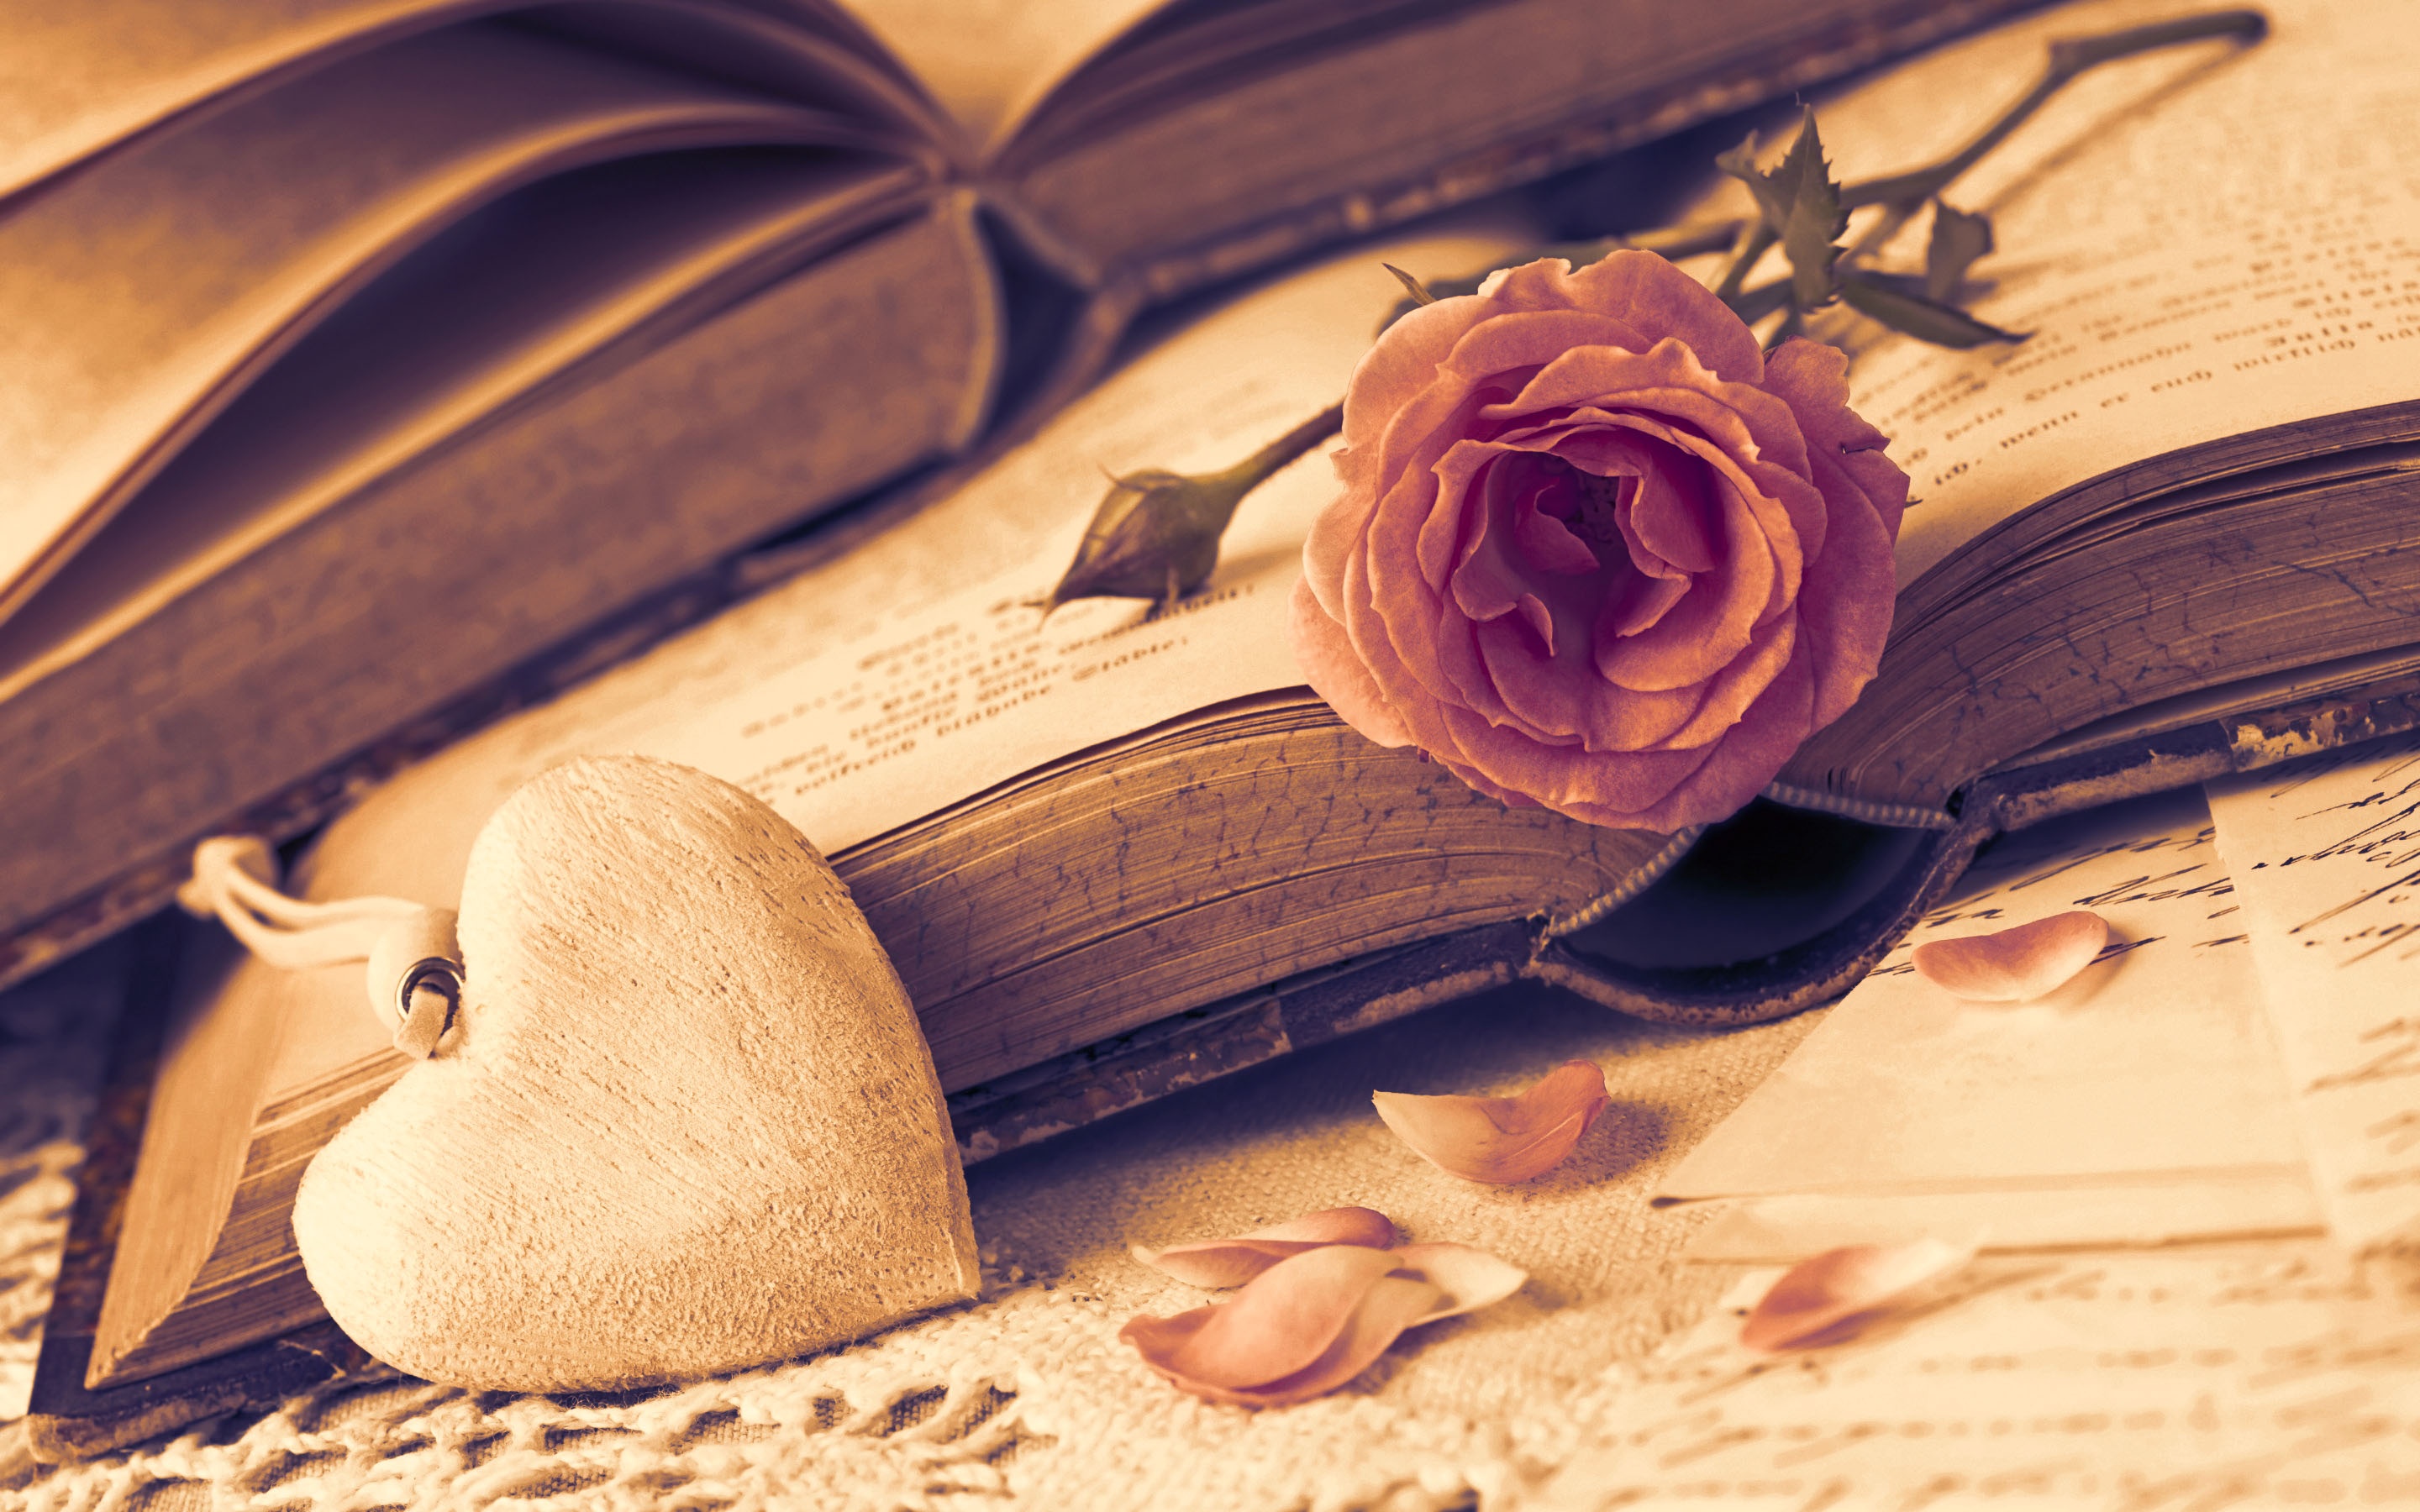 Romantic Heart Love Rose - Rose Romantic Heart - HD Wallpaper 